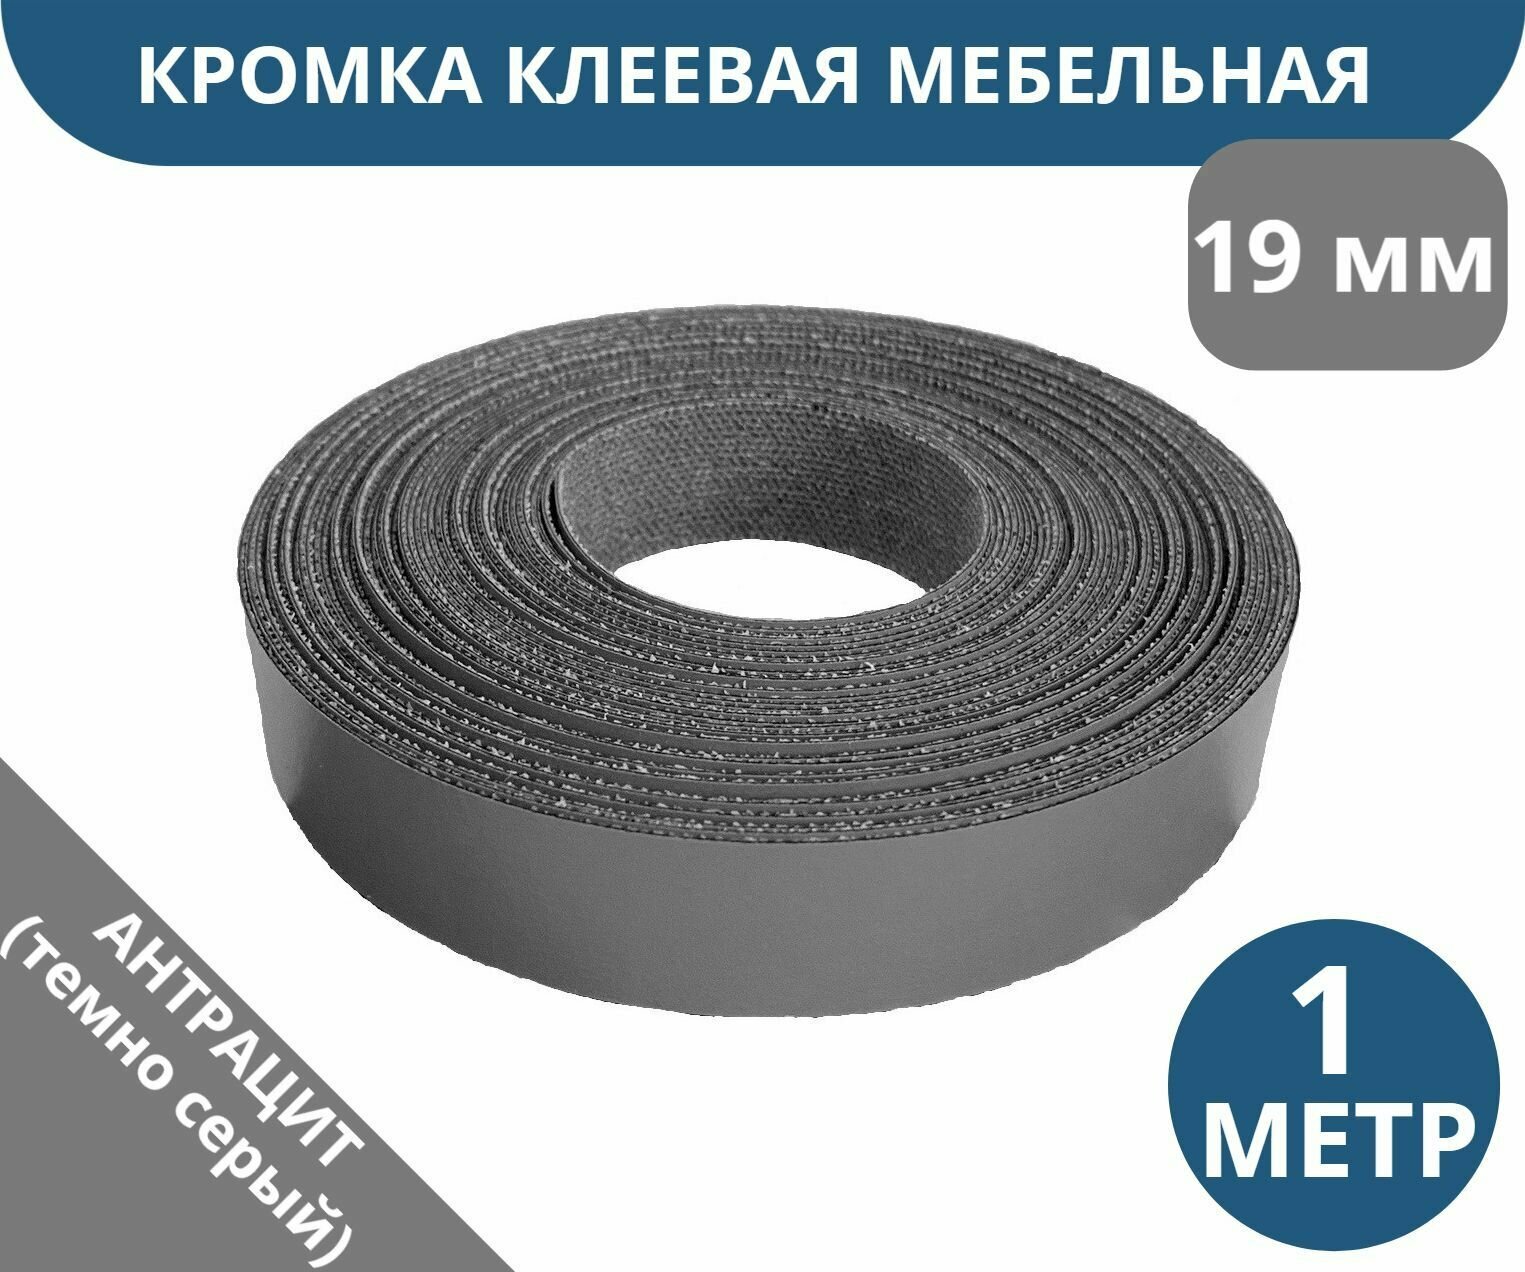 Лента кромочная меламиновая для мебели 19 мм х 0.4 мм и 40 мм х 0.4 мм